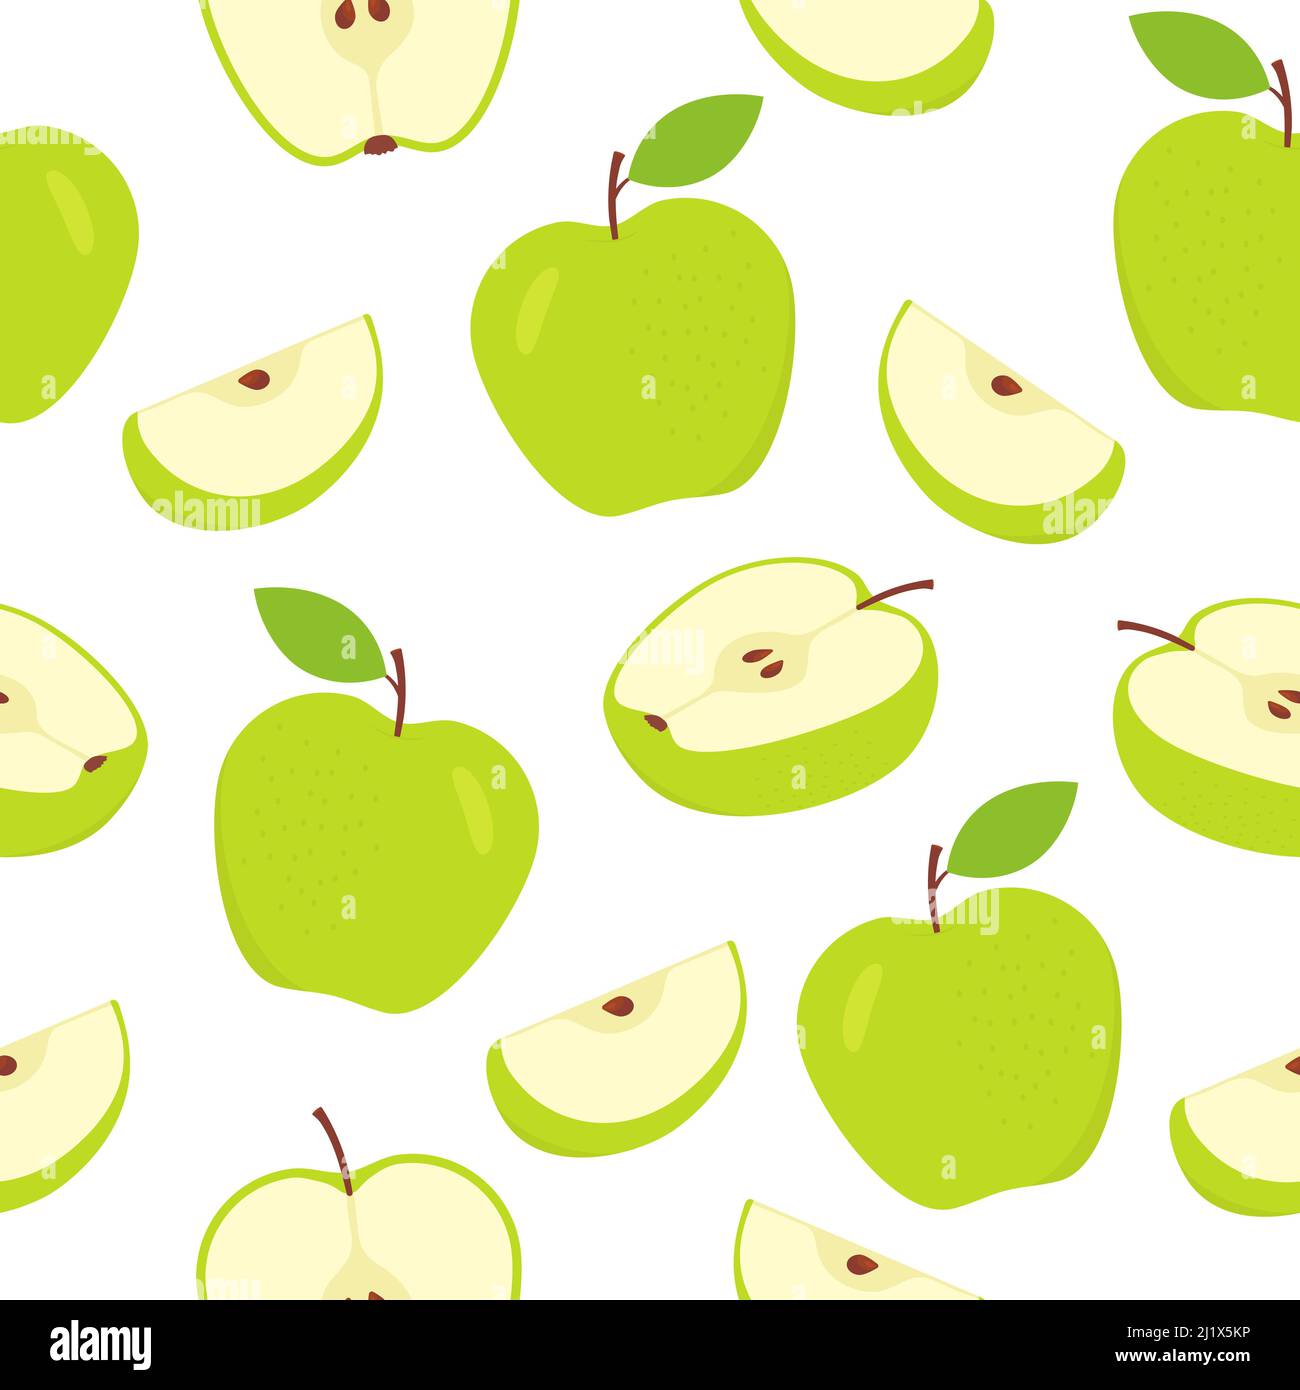 Nahtloses Apfelmuster. Geschnittene grüne Äpfel weißer Hintergrund. Süße süße süße Früchte Textur. Vektorgrafik Stock Vektor